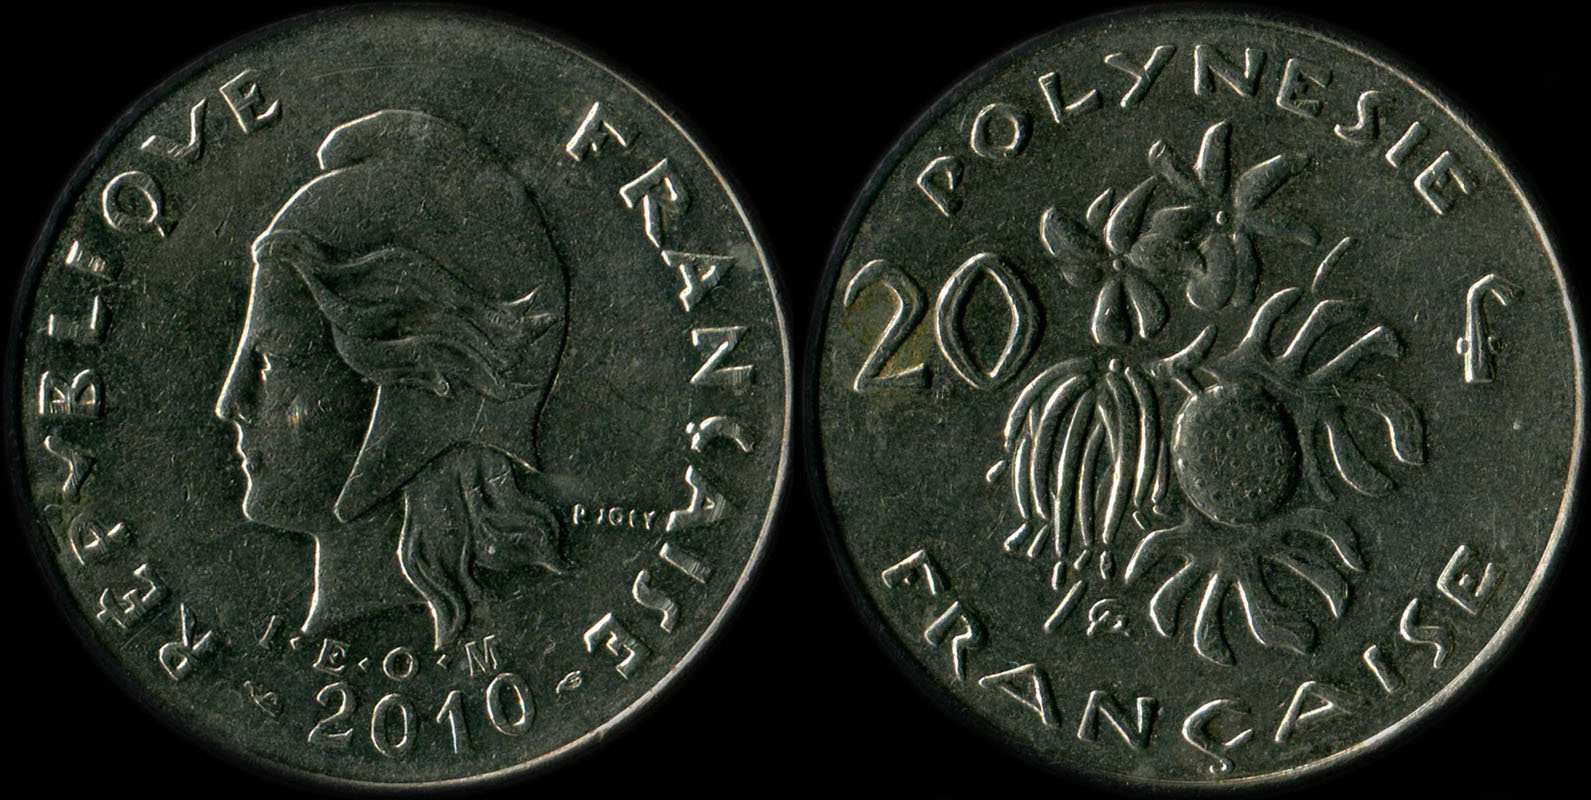 Pice de 20 francs 2010 Polynsie franaise I.E.O.M.